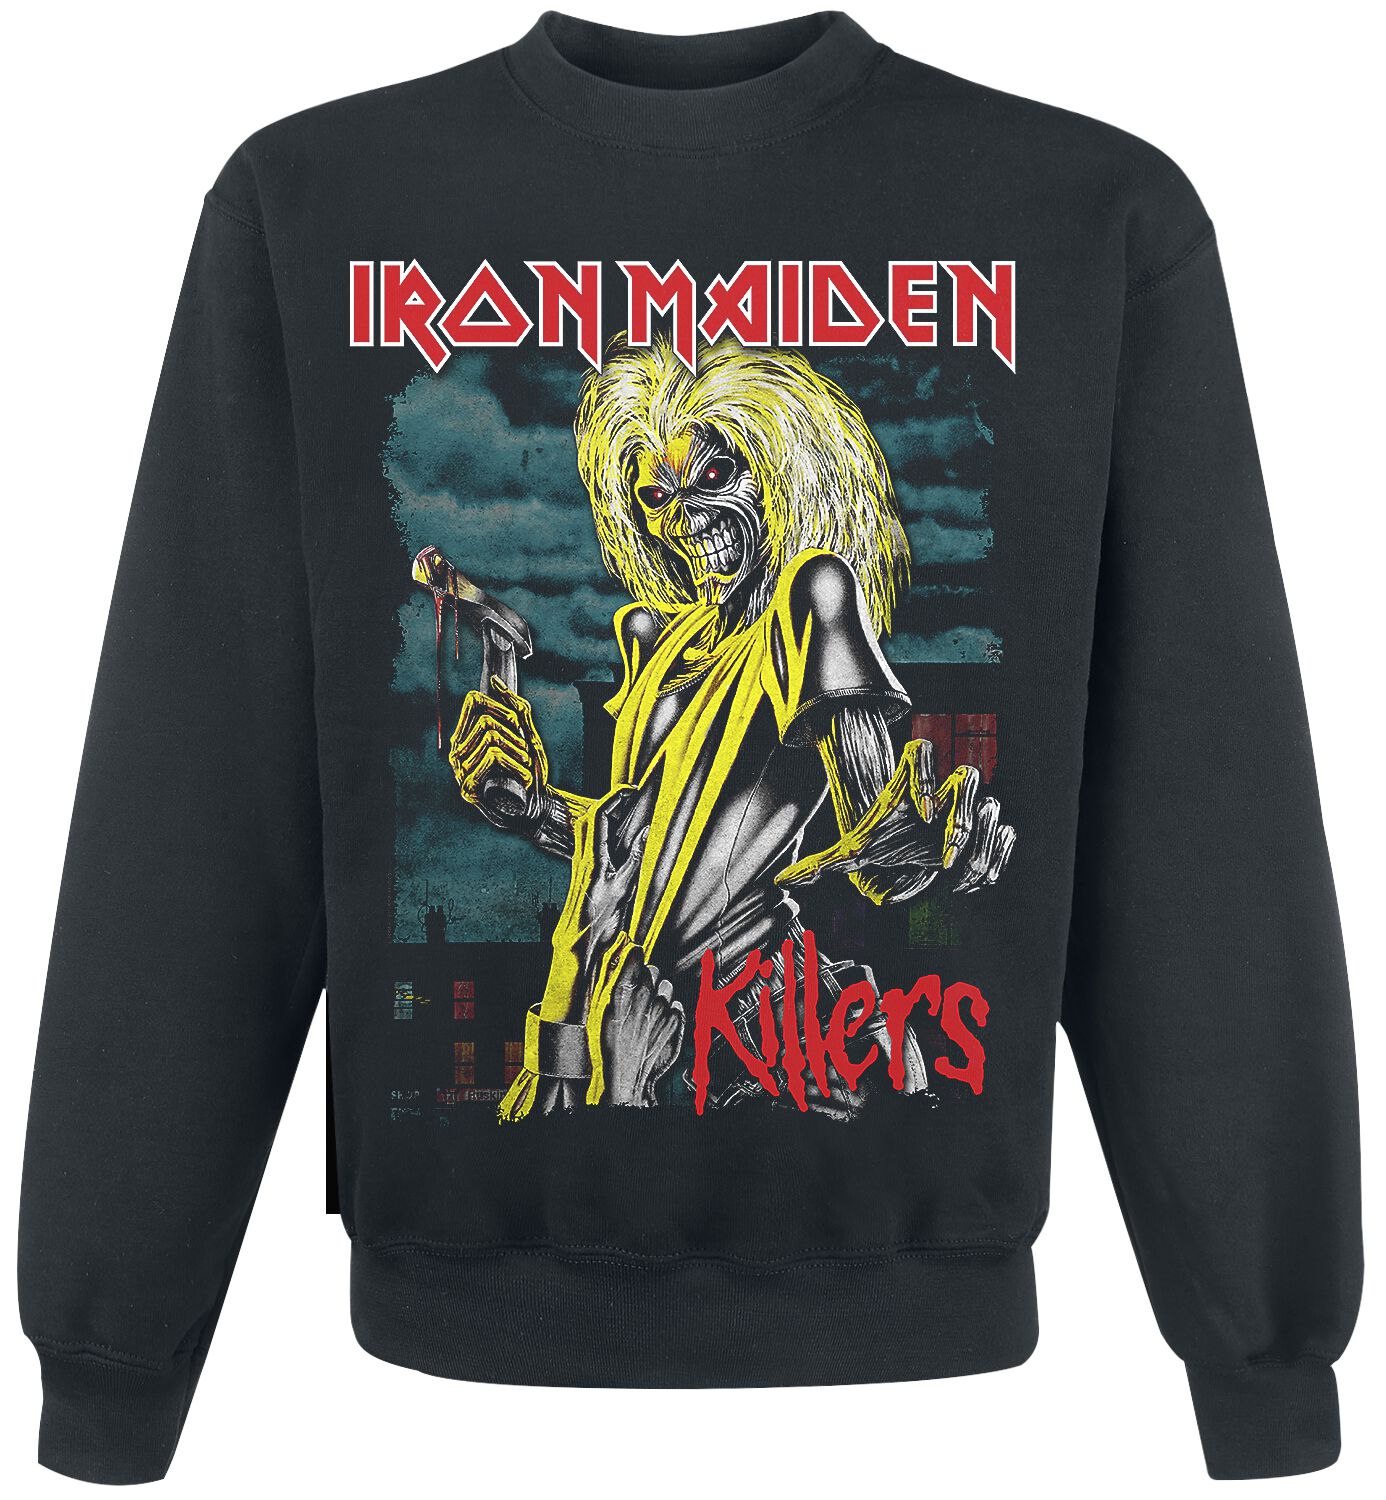 Iron Maiden Sweatshirt - Killers Green Clouds - S bis XXL - für Männer - Größe M - schwarz  - Lizenziertes Merchandise!